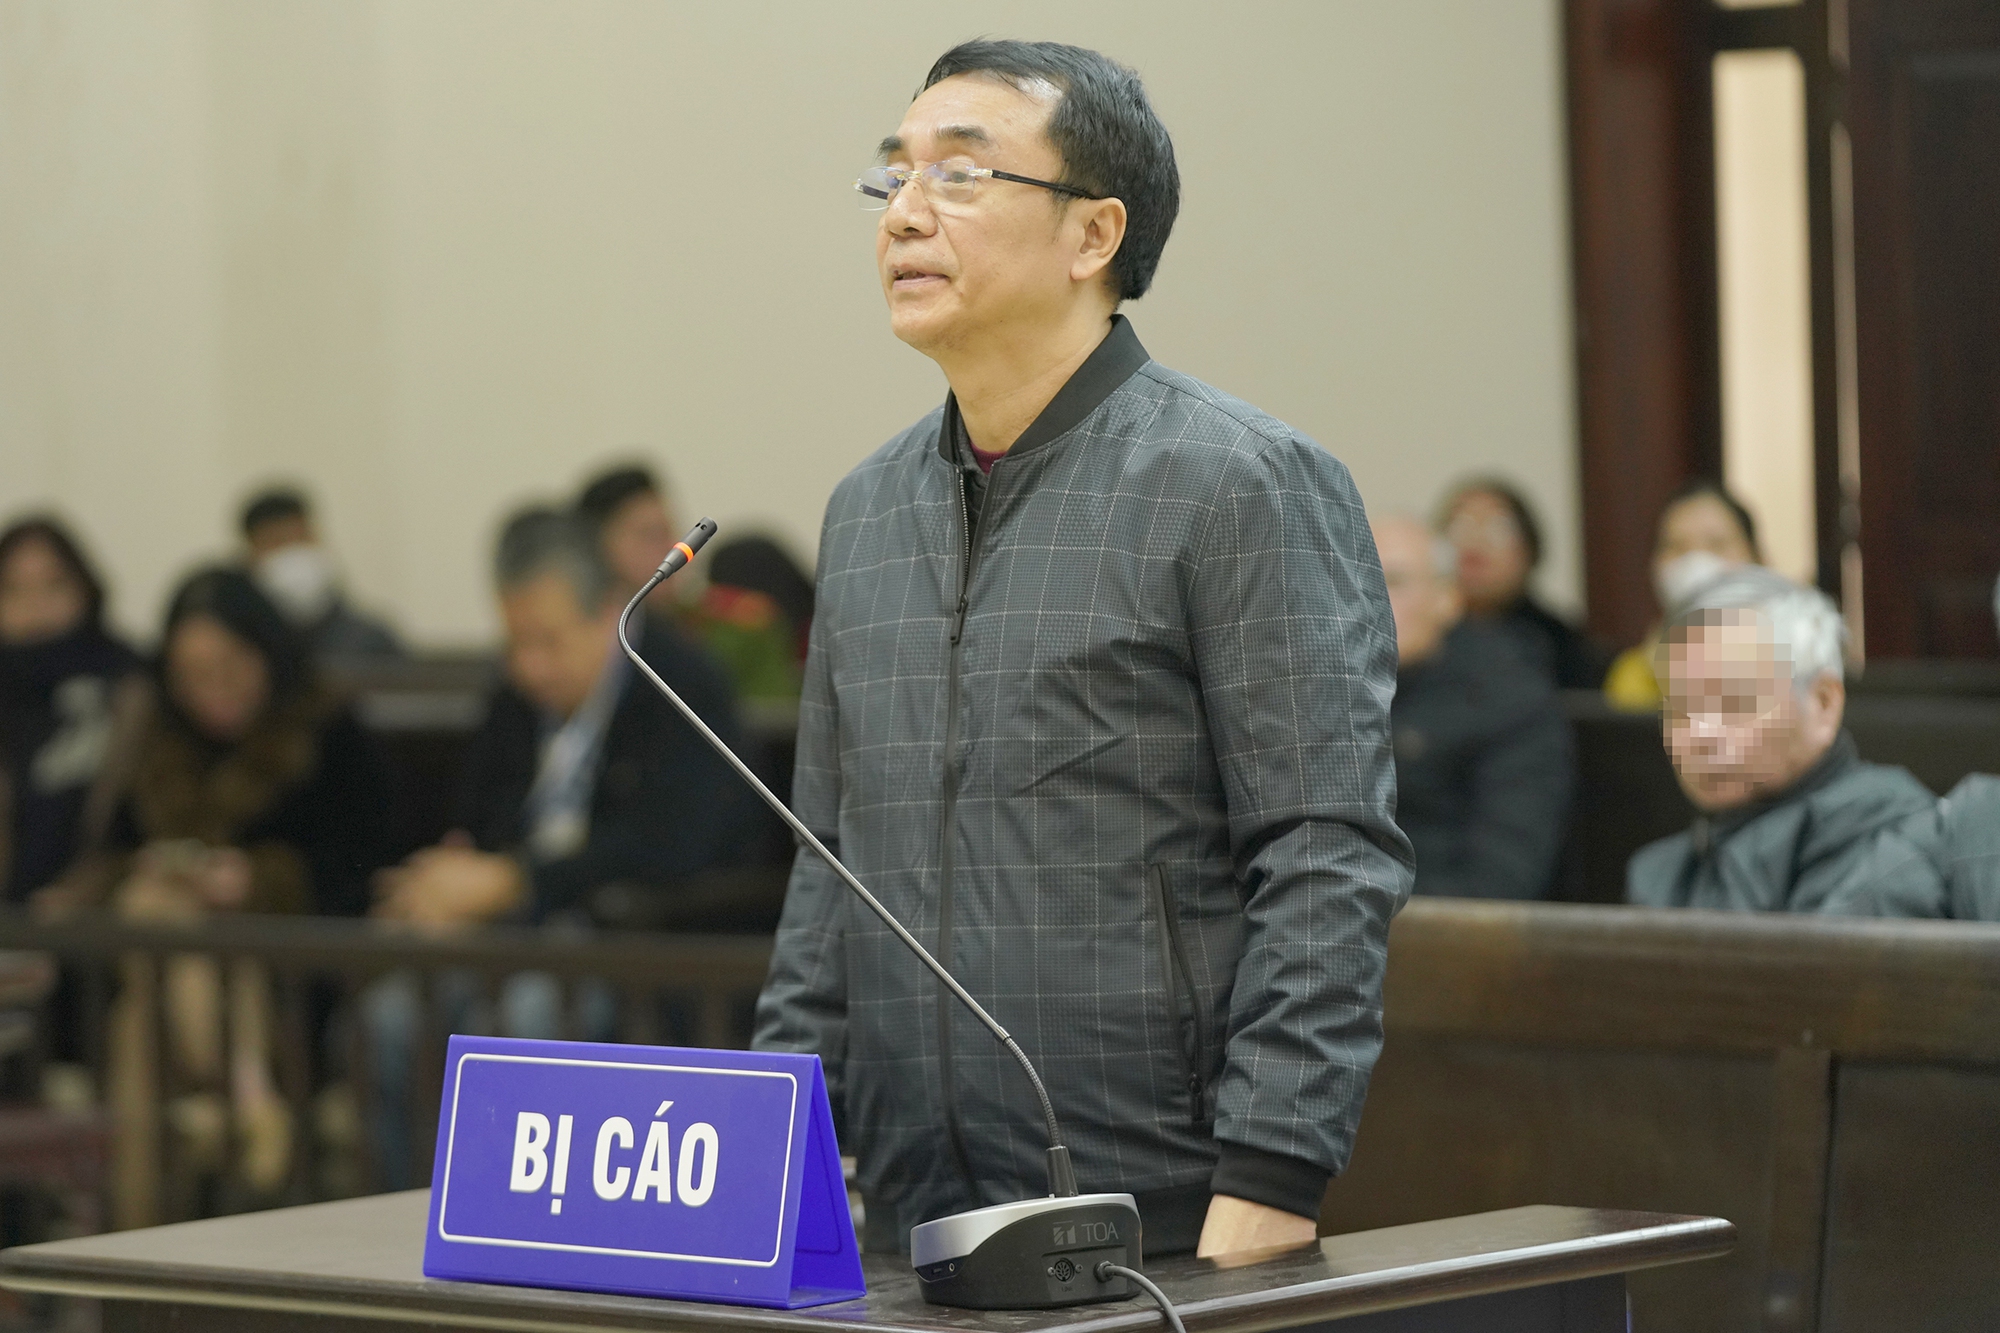 Bị cáo Trần Hùng nói "sẽ theo đuổi vụ án để bảo vệ danh dự" vẫn bị tuyên y án 9 năm tù- Ảnh 1.